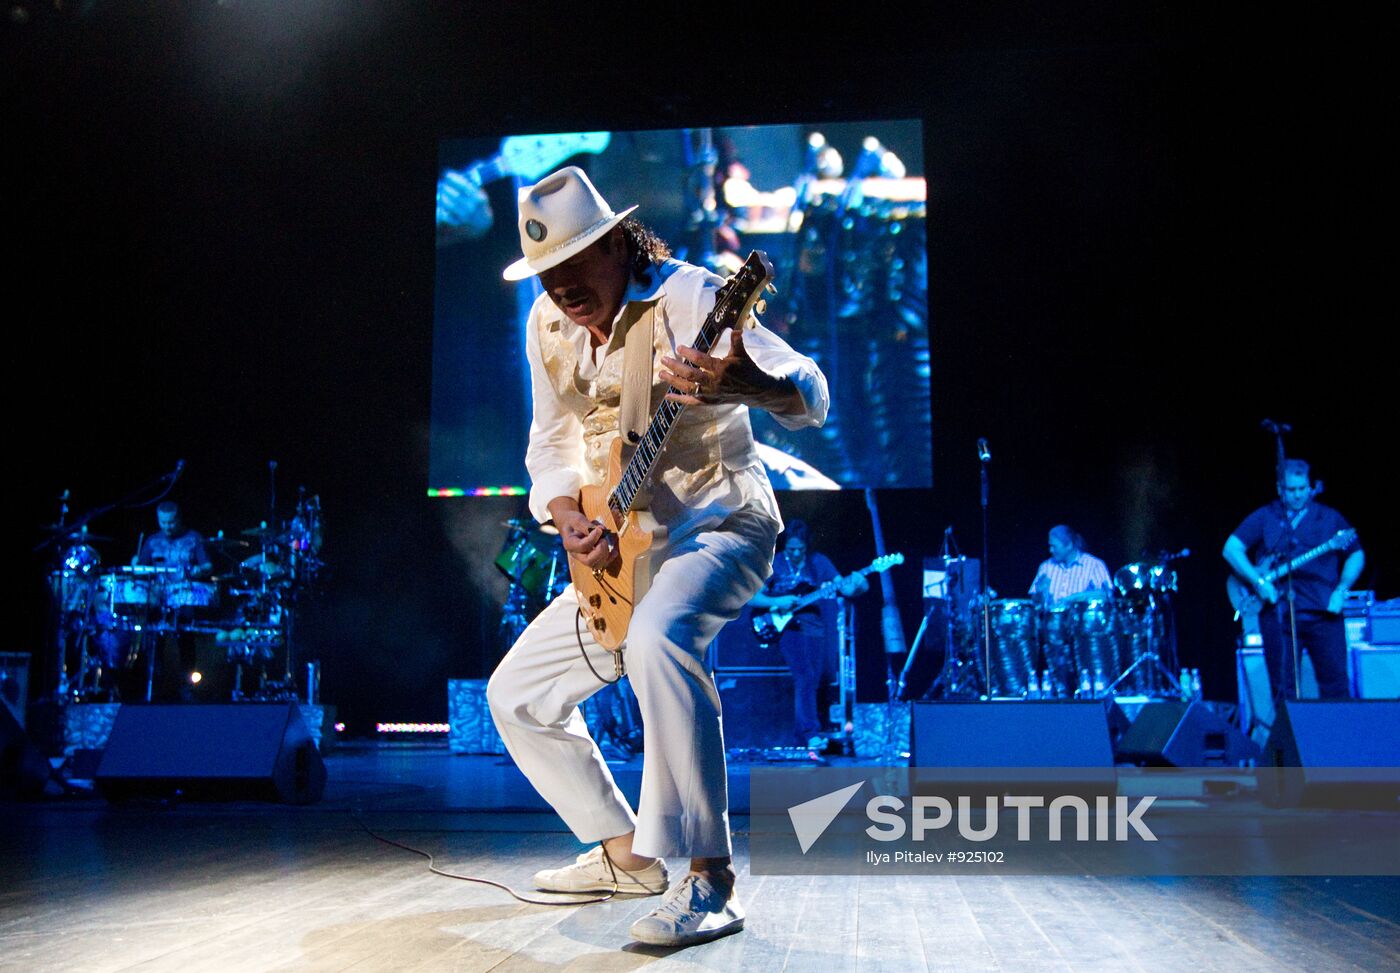 Guitarist Carlos Santana's concert